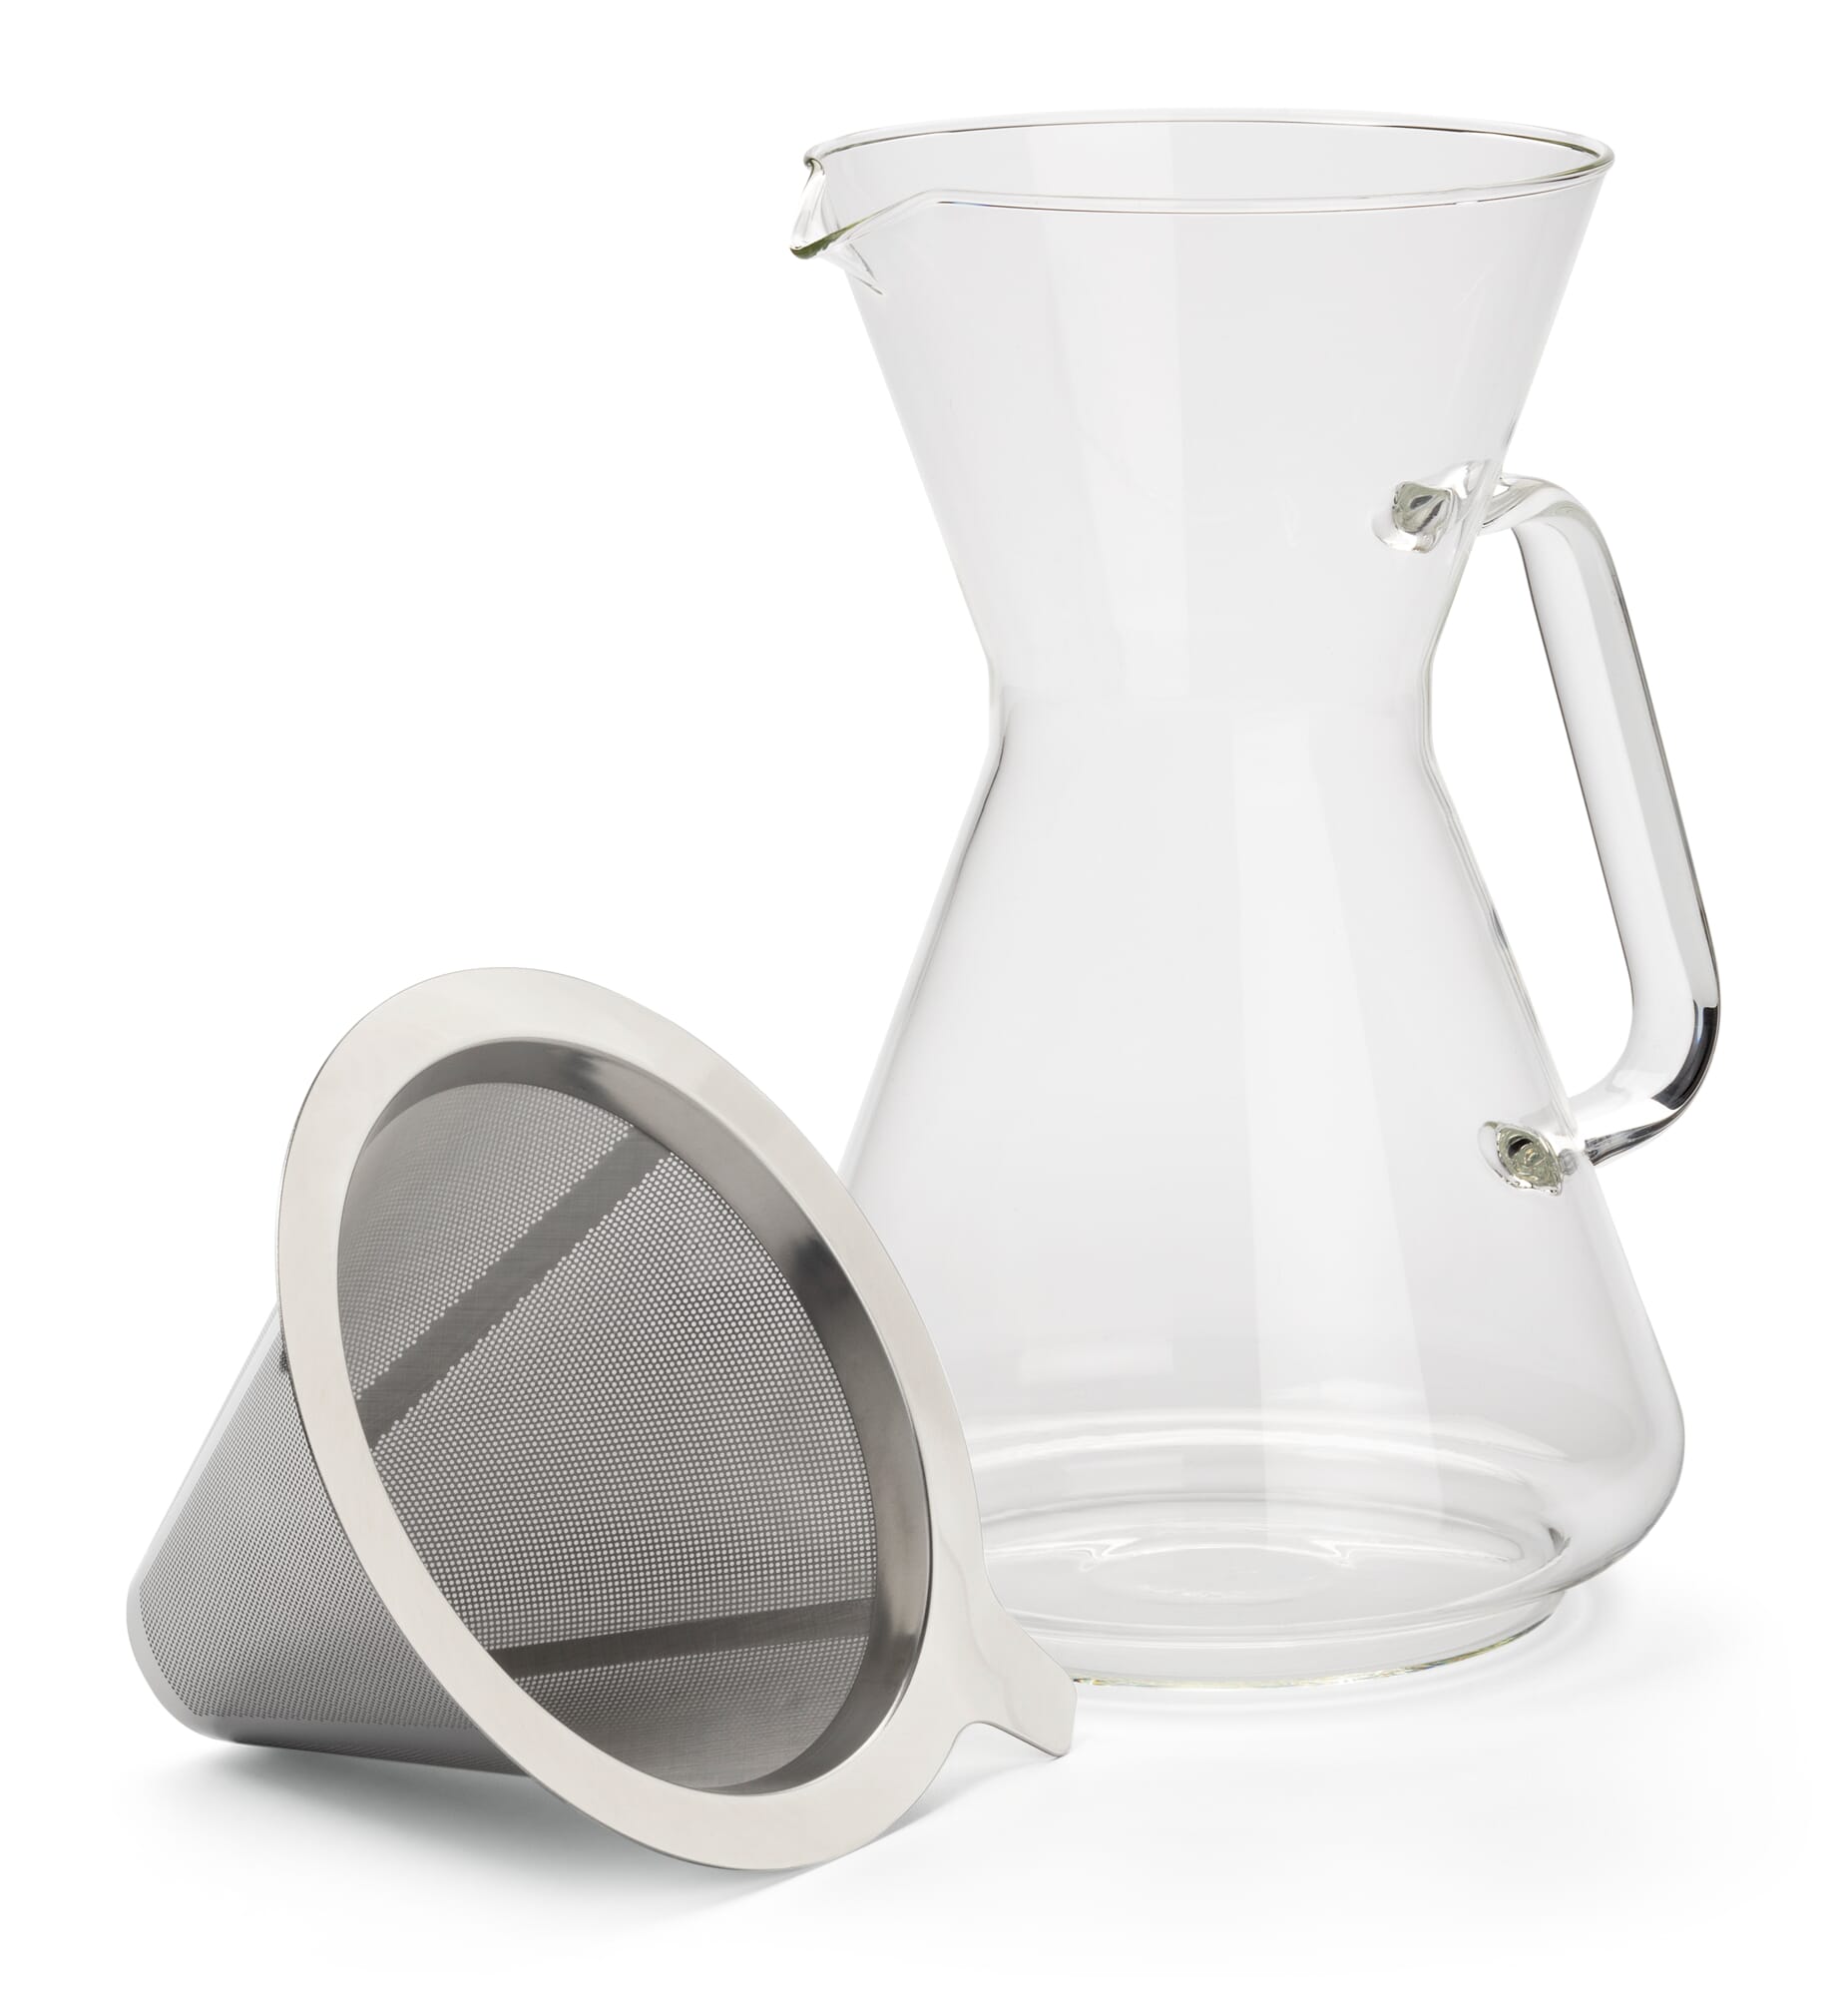 https://assets.manufactum.de/p/203/203469/203469_01.jpg/coffee-maker-permanent-filter-borosilicate-glass.jpg